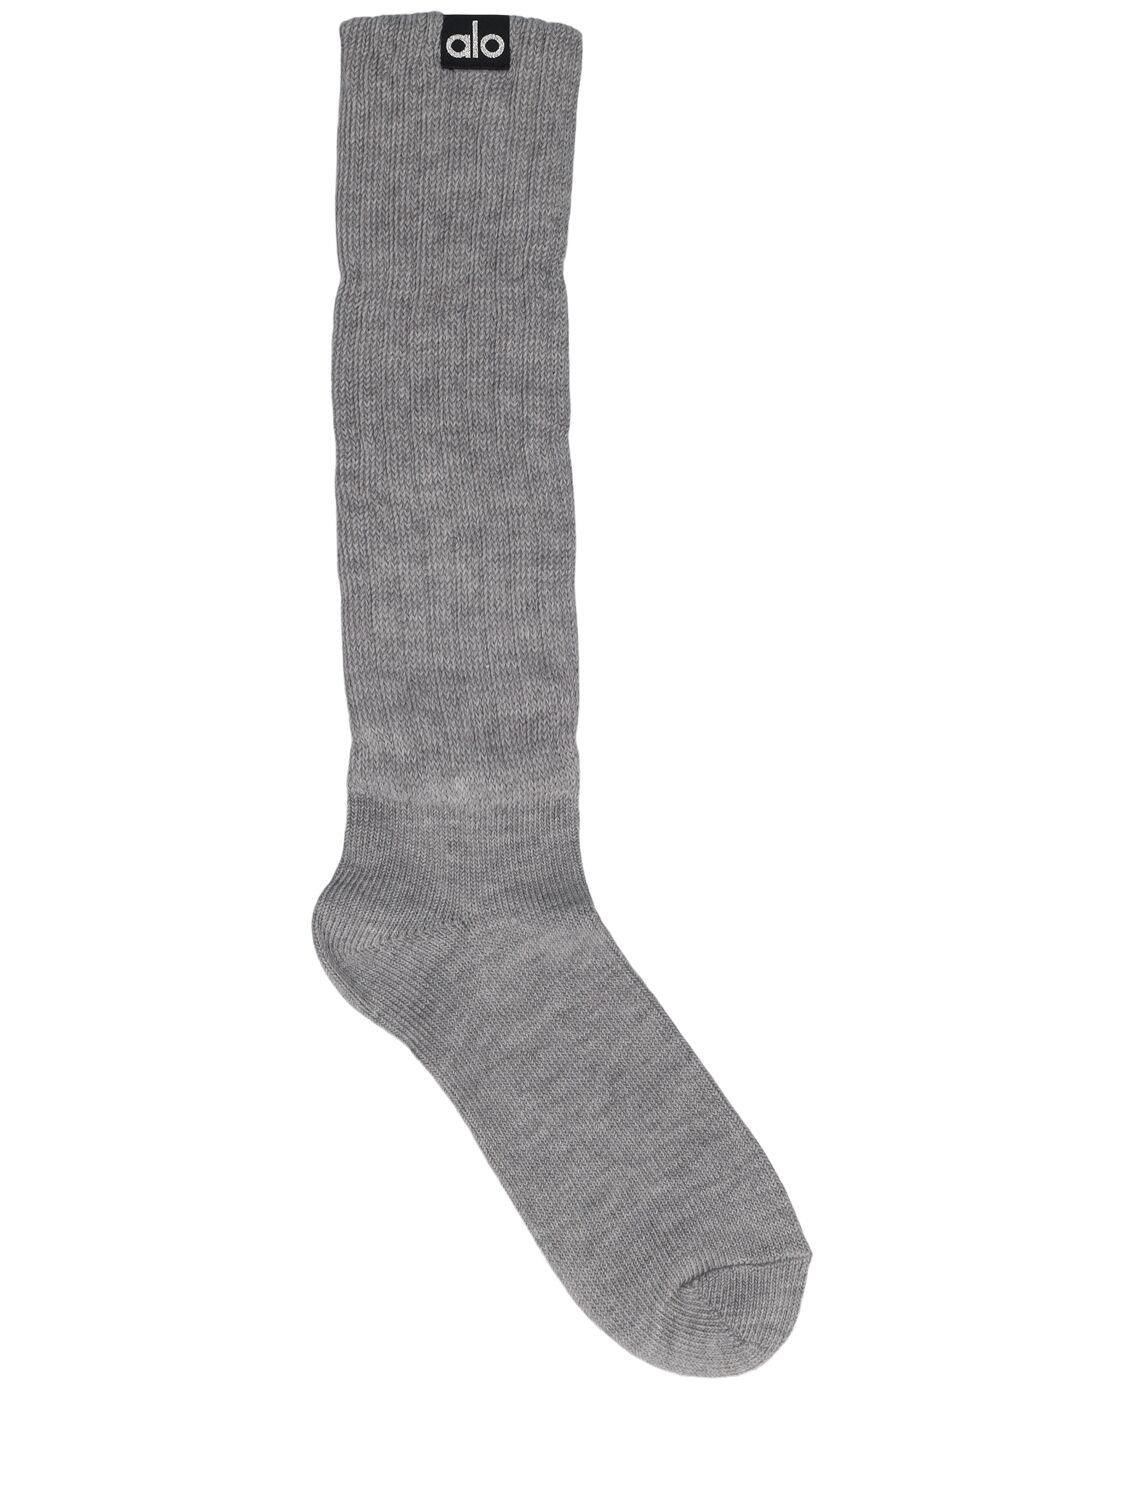 Alo Yoga Scrunch Cotton Blend Socks In Gray